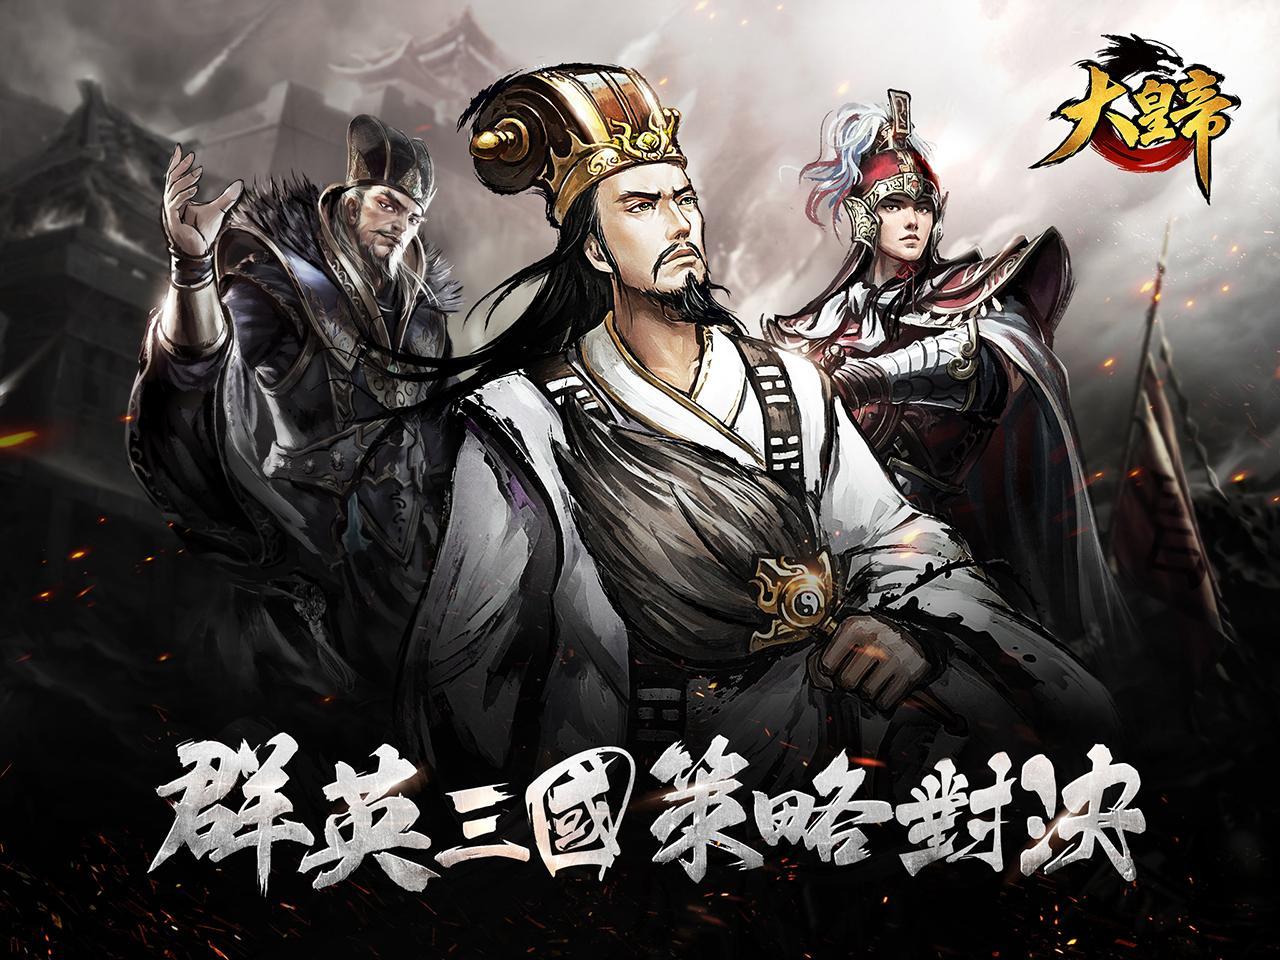 Screenshot 1 of Đại Đế Mobile Games 1.13.5